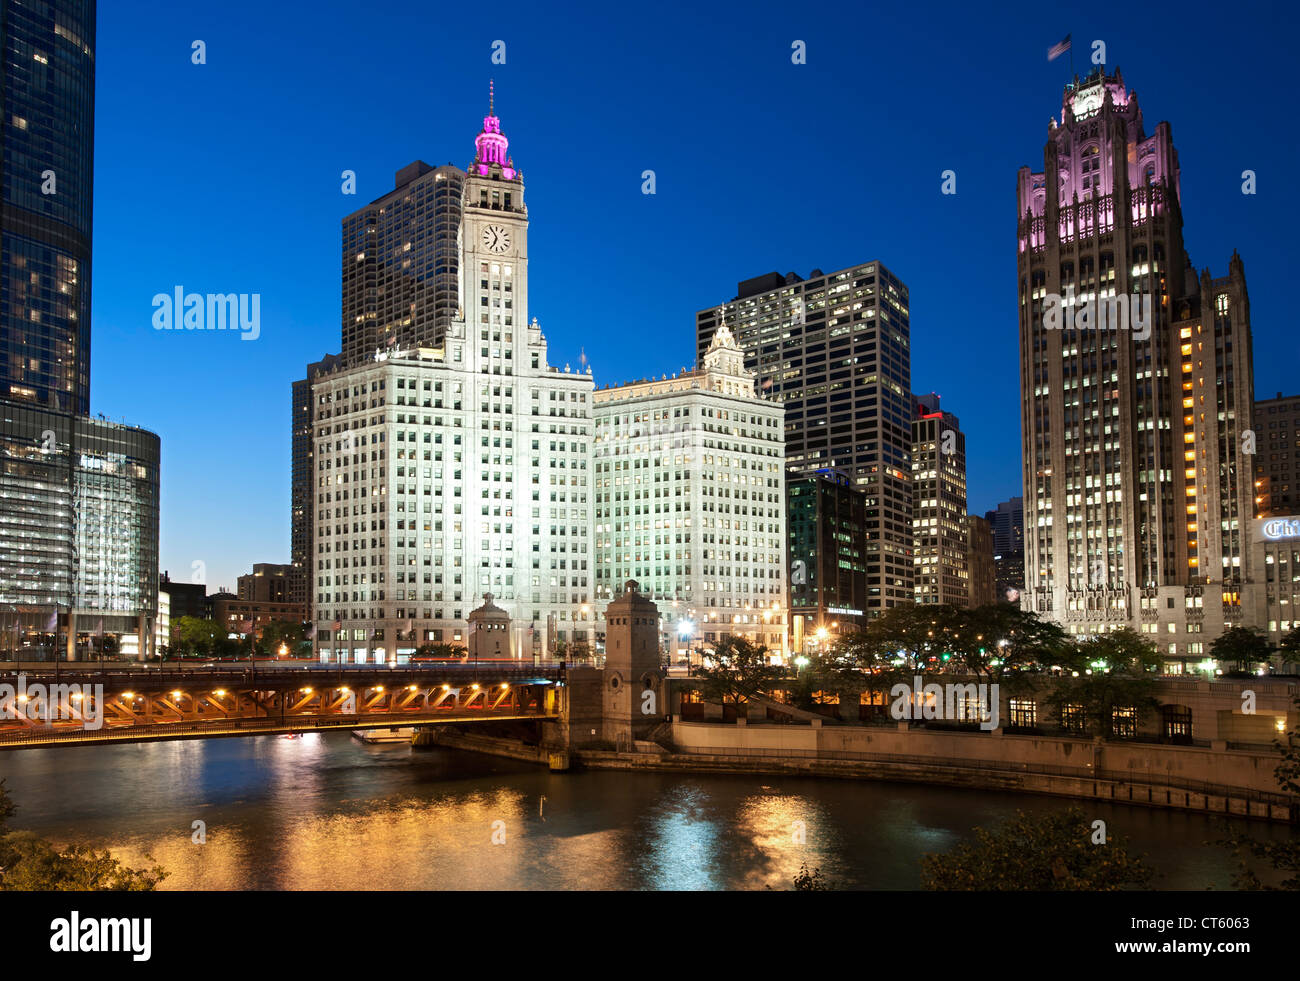 Nächtlichen Blick auf die Michigan Avenue Bridge (offiziell DuSable) und die Wrigley building und Tribune Tower in Chicago. Stockfoto